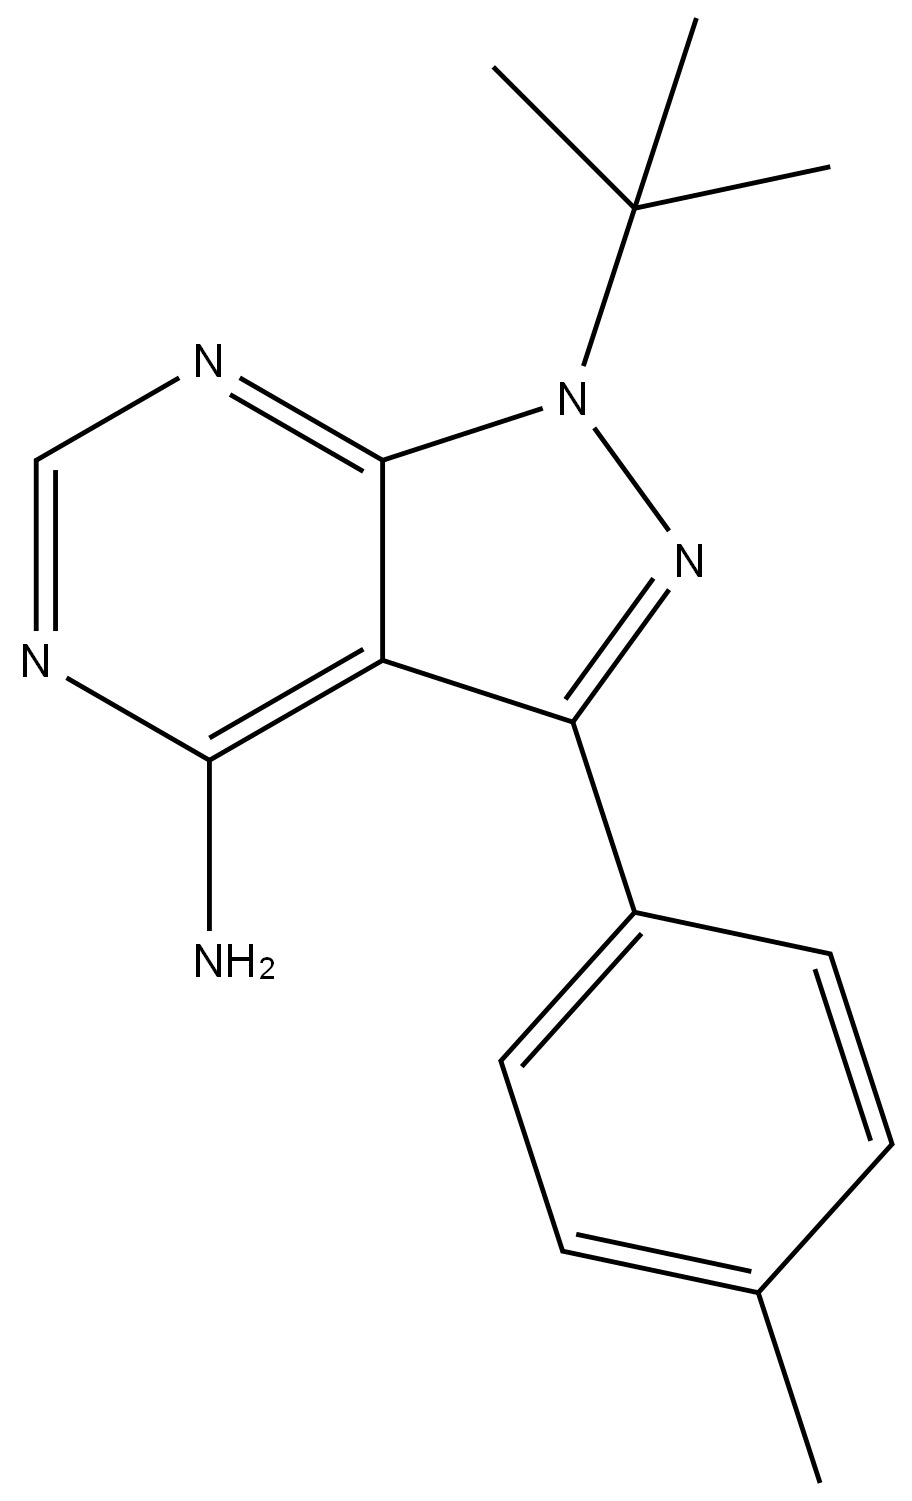 蛋白磷酸酯酶-1(抗原)